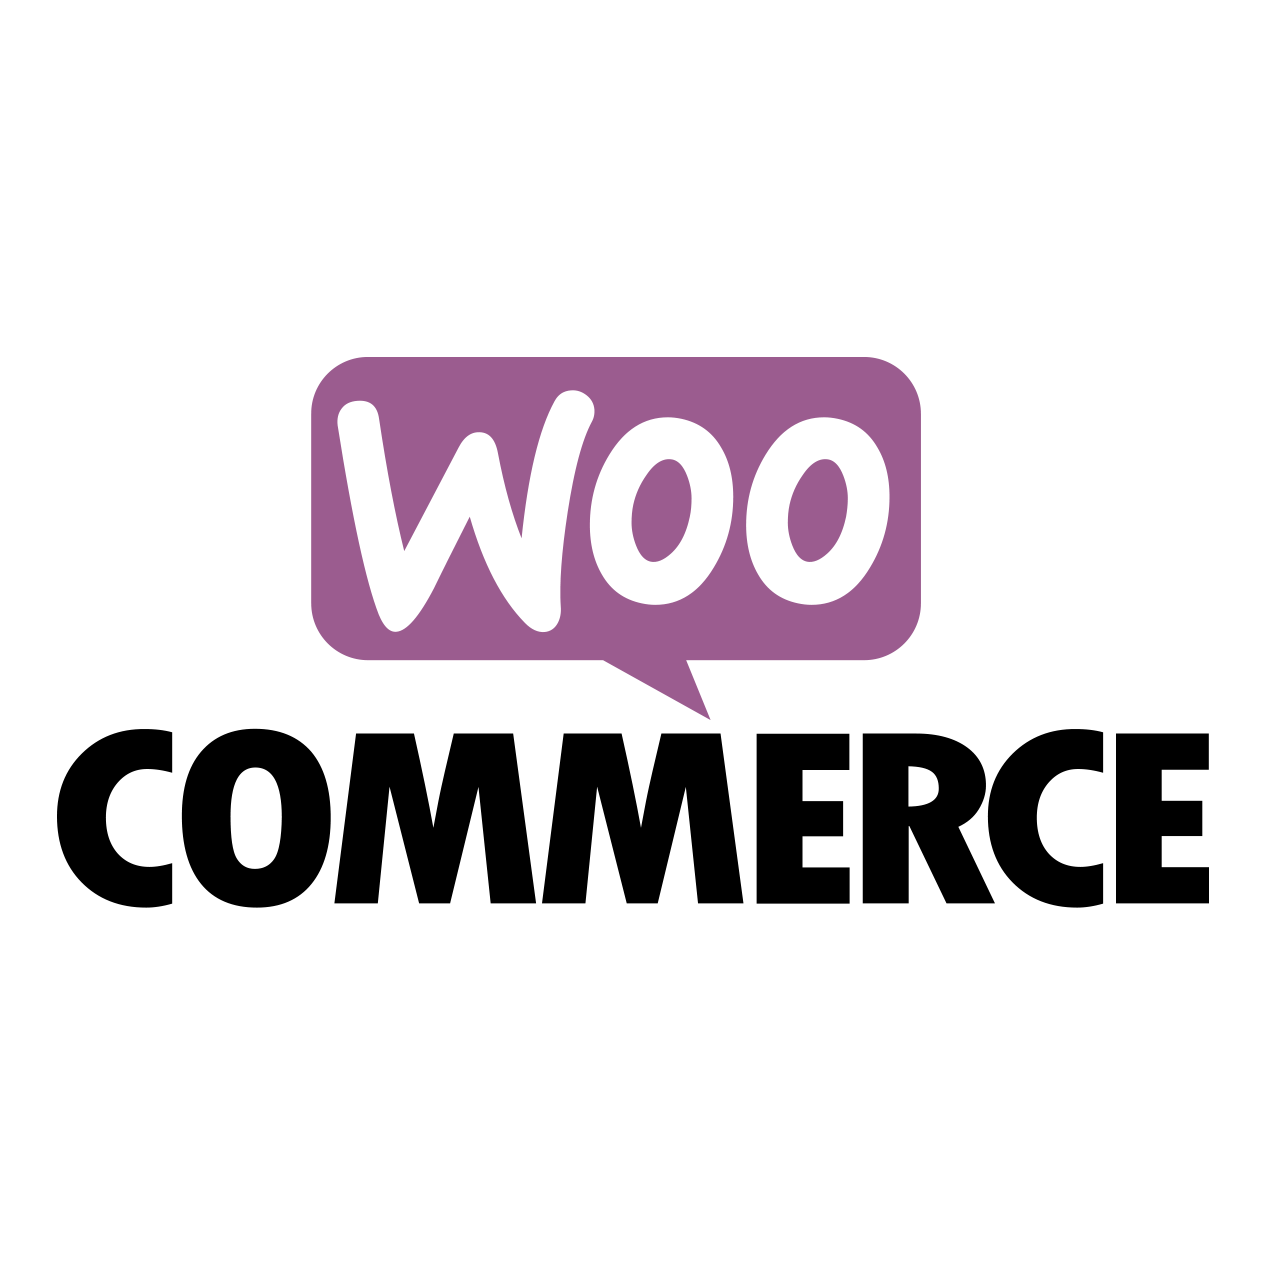 Integratie Lean ERP platform met het WooCommerce platform van WordPress